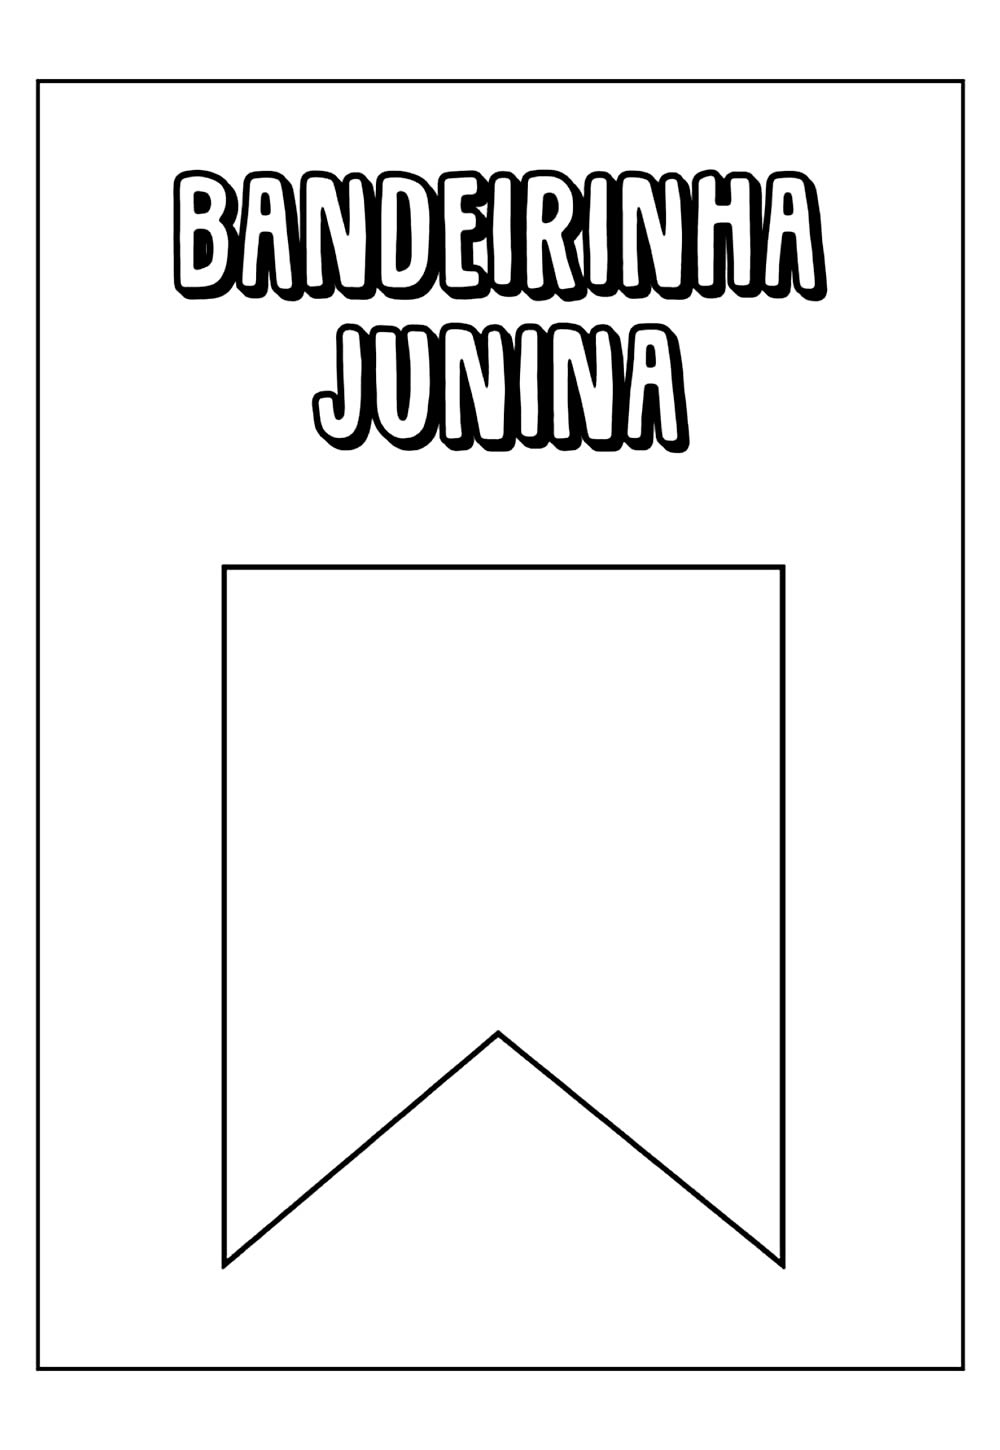 Desenho Educativo de Bandeirinha Junina